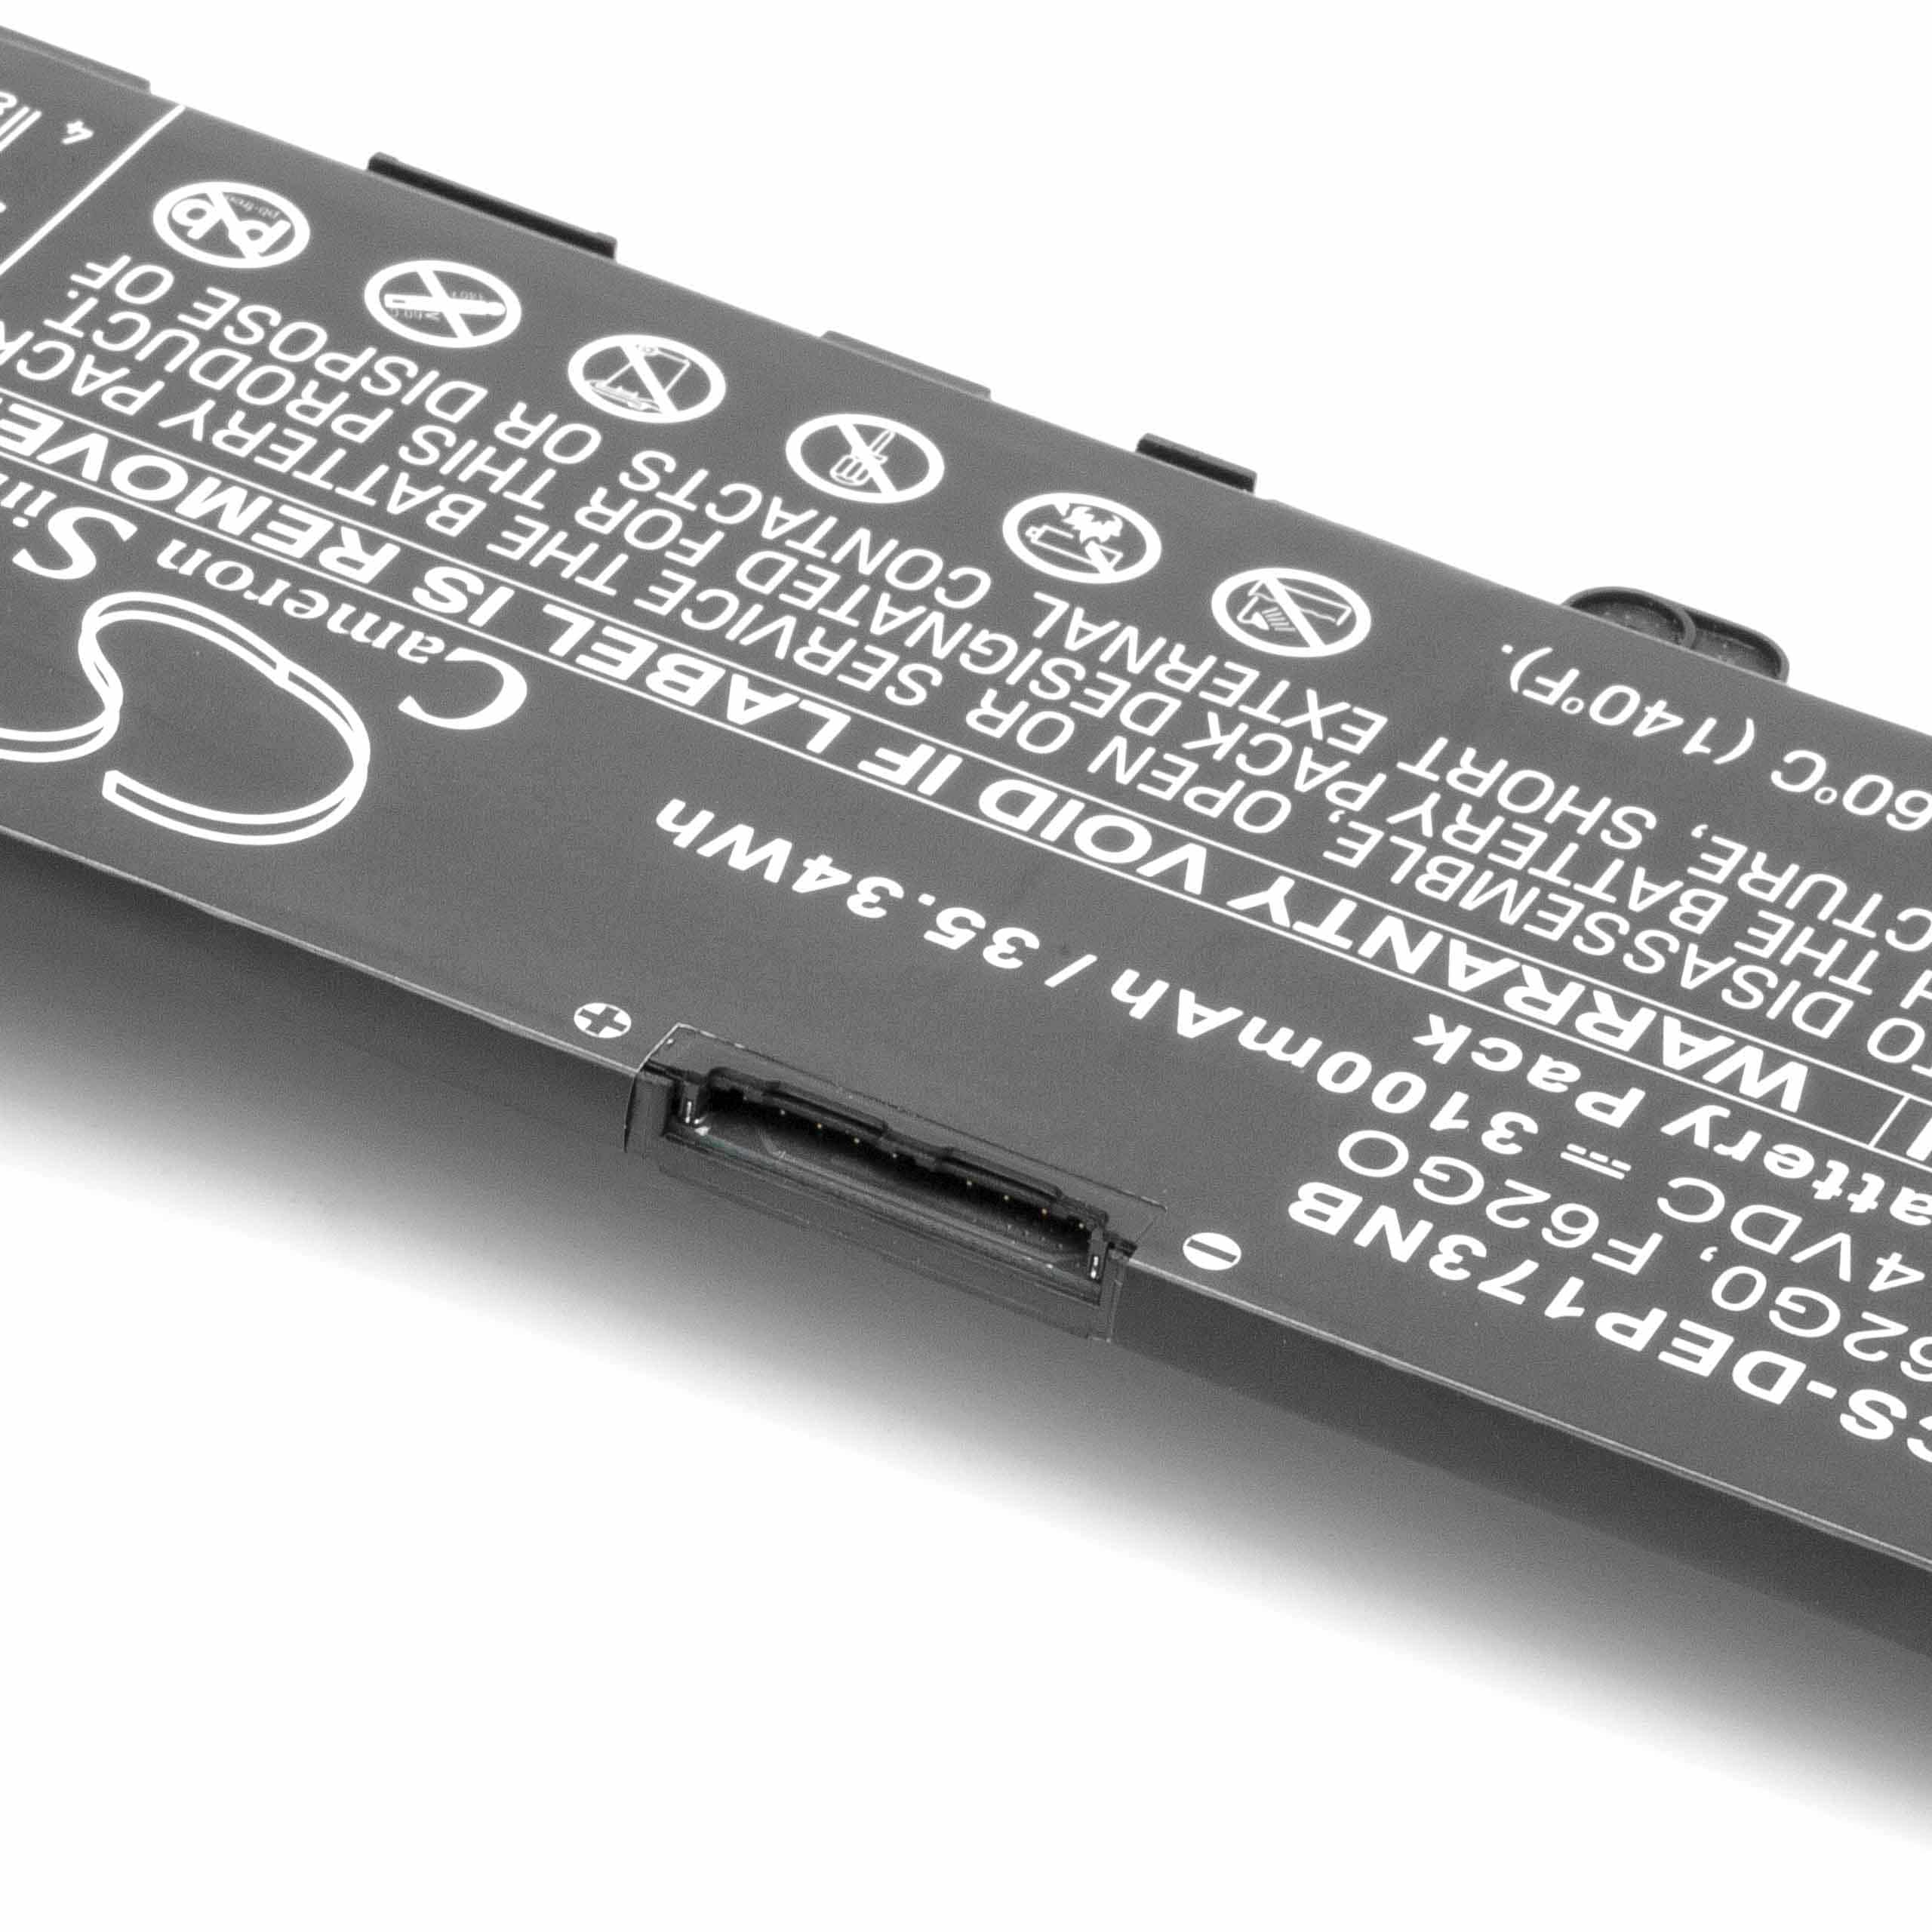 Batterie remplace Dell 39DY5, F62G0, 0RPJC3, 039DY5 pour ordinateur portable - 3100mAh 11,4V Li-ion, noir